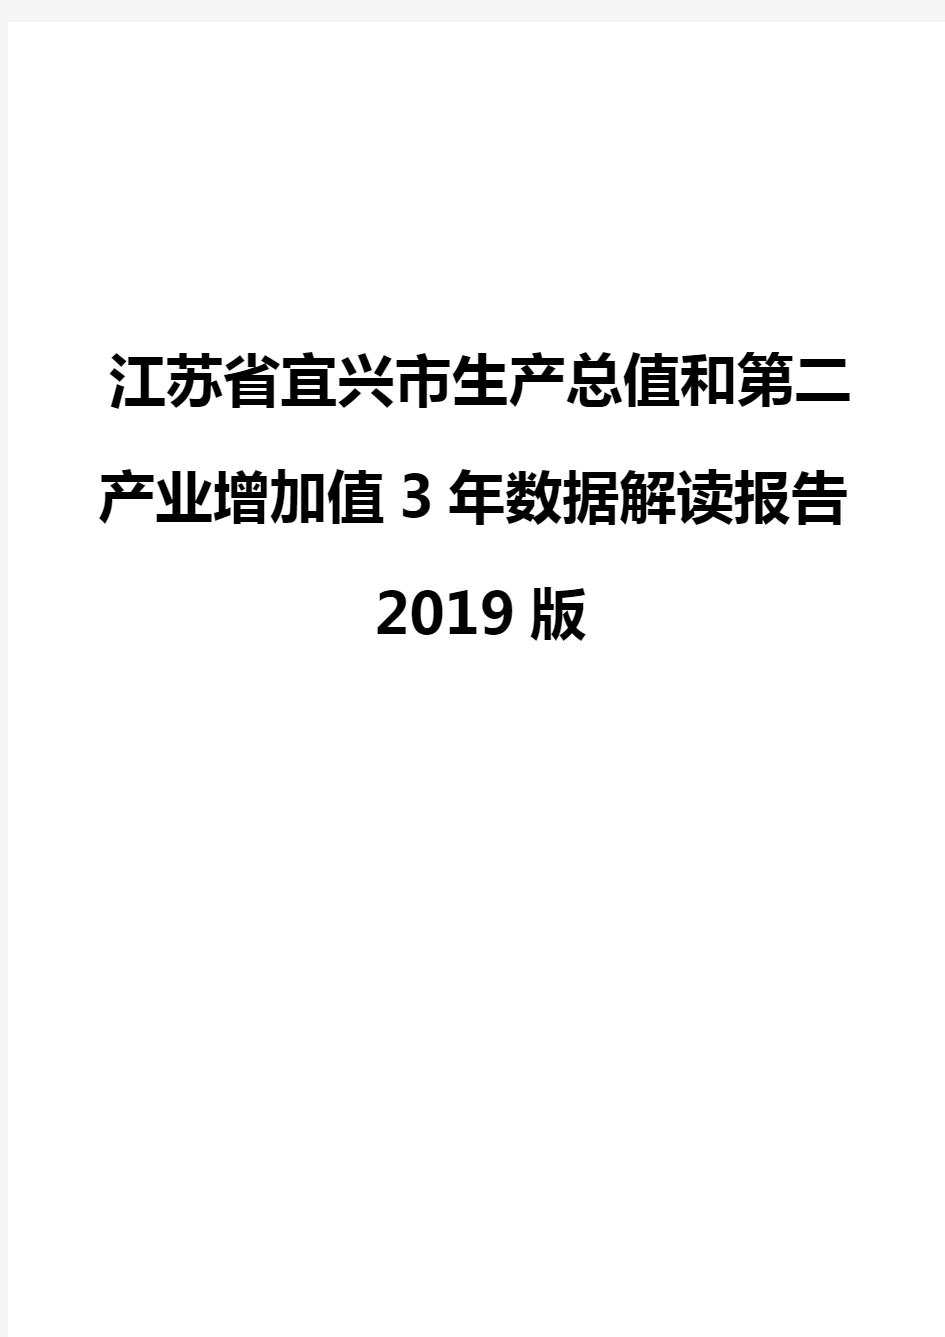 江苏省宜兴市生产总值和第二产业增加值3年数据解读报告2019版